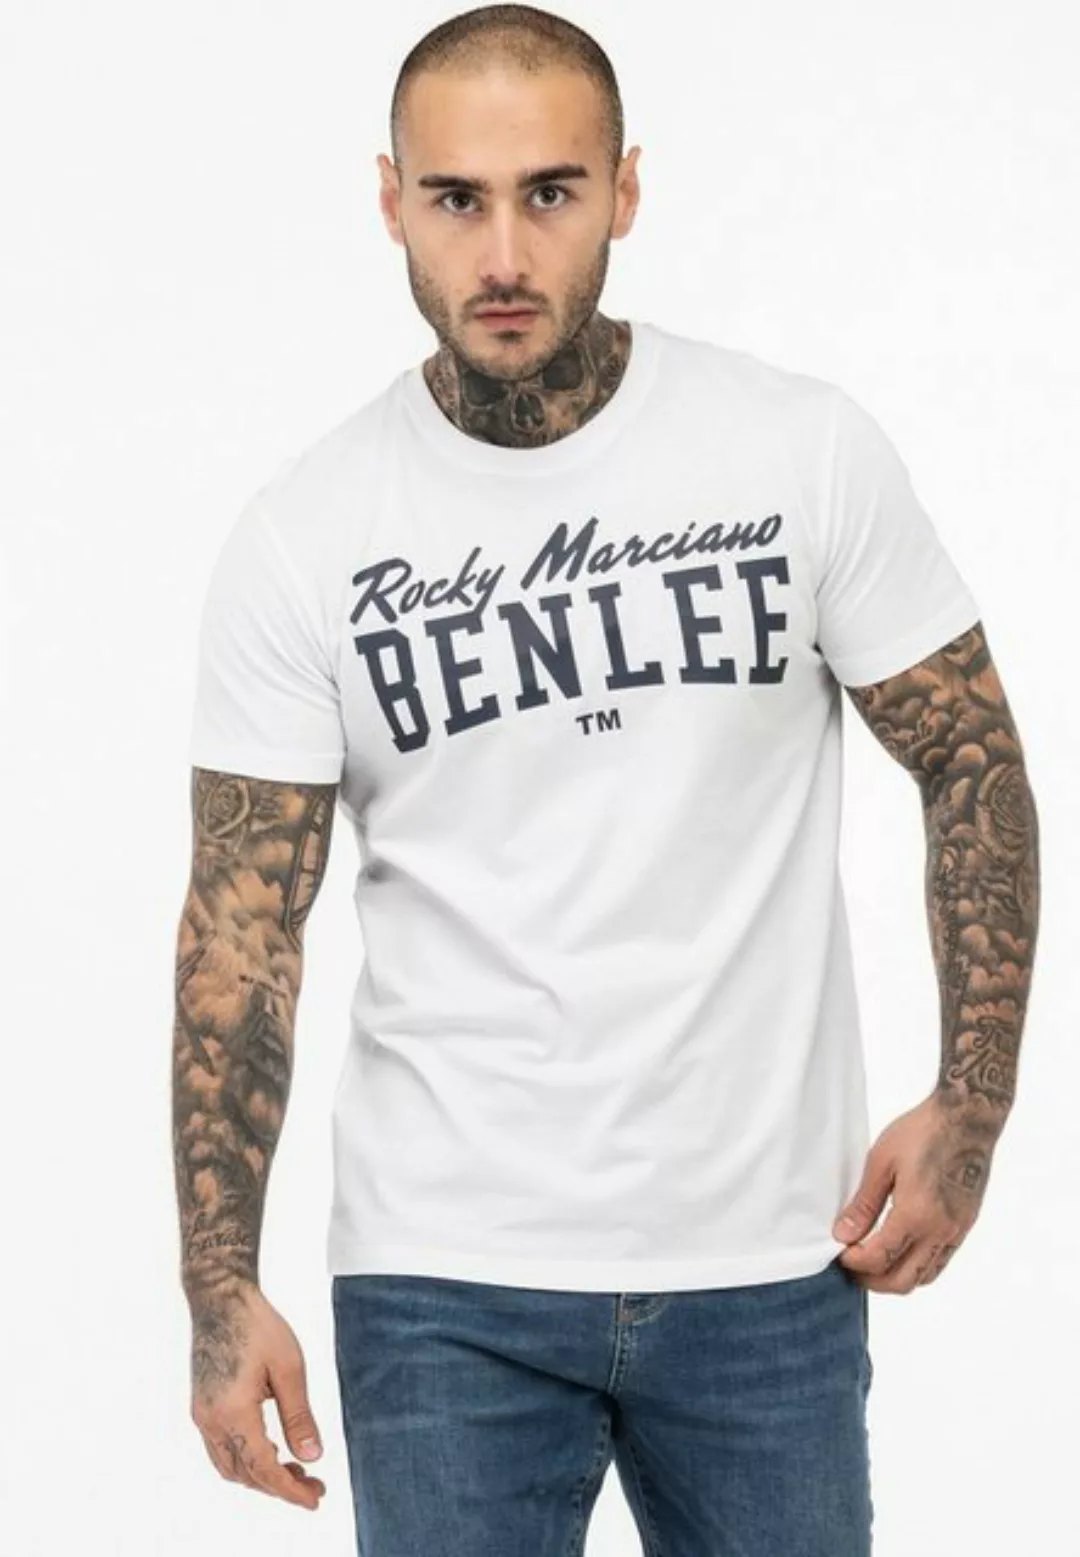 Benlee Rocky Marciano T-Shirt LOGO günstig online kaufen